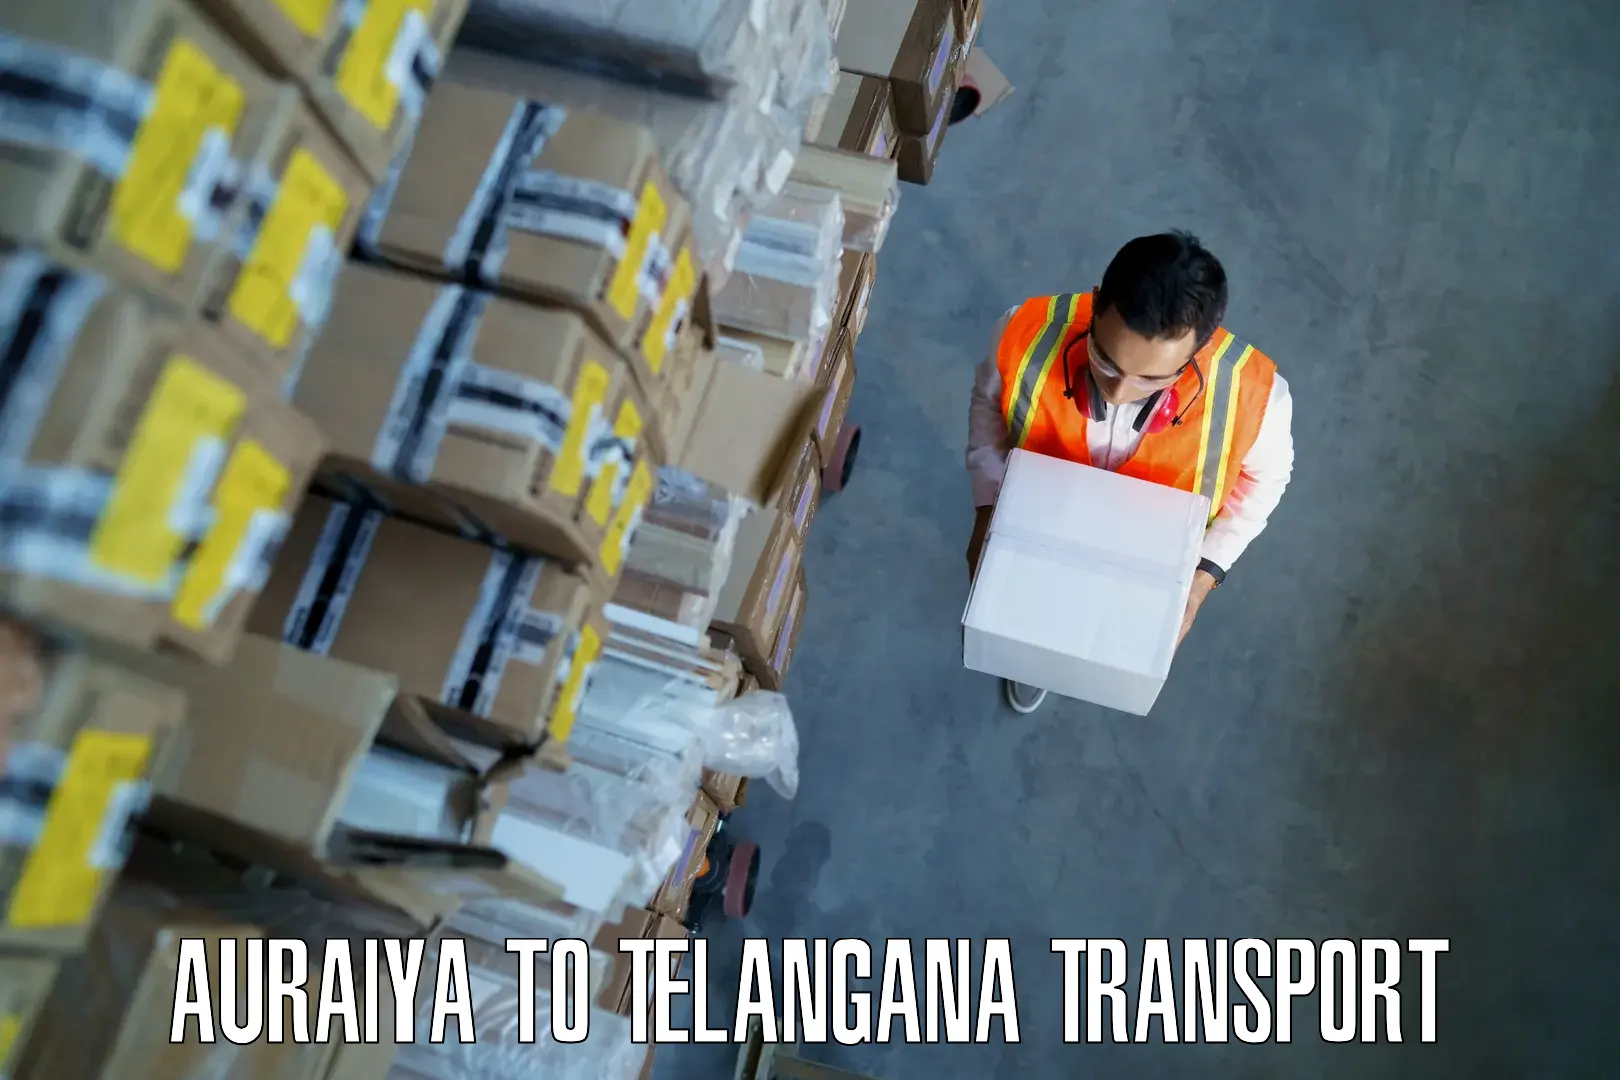 Air cargo transport services Auraiya to Patancheru